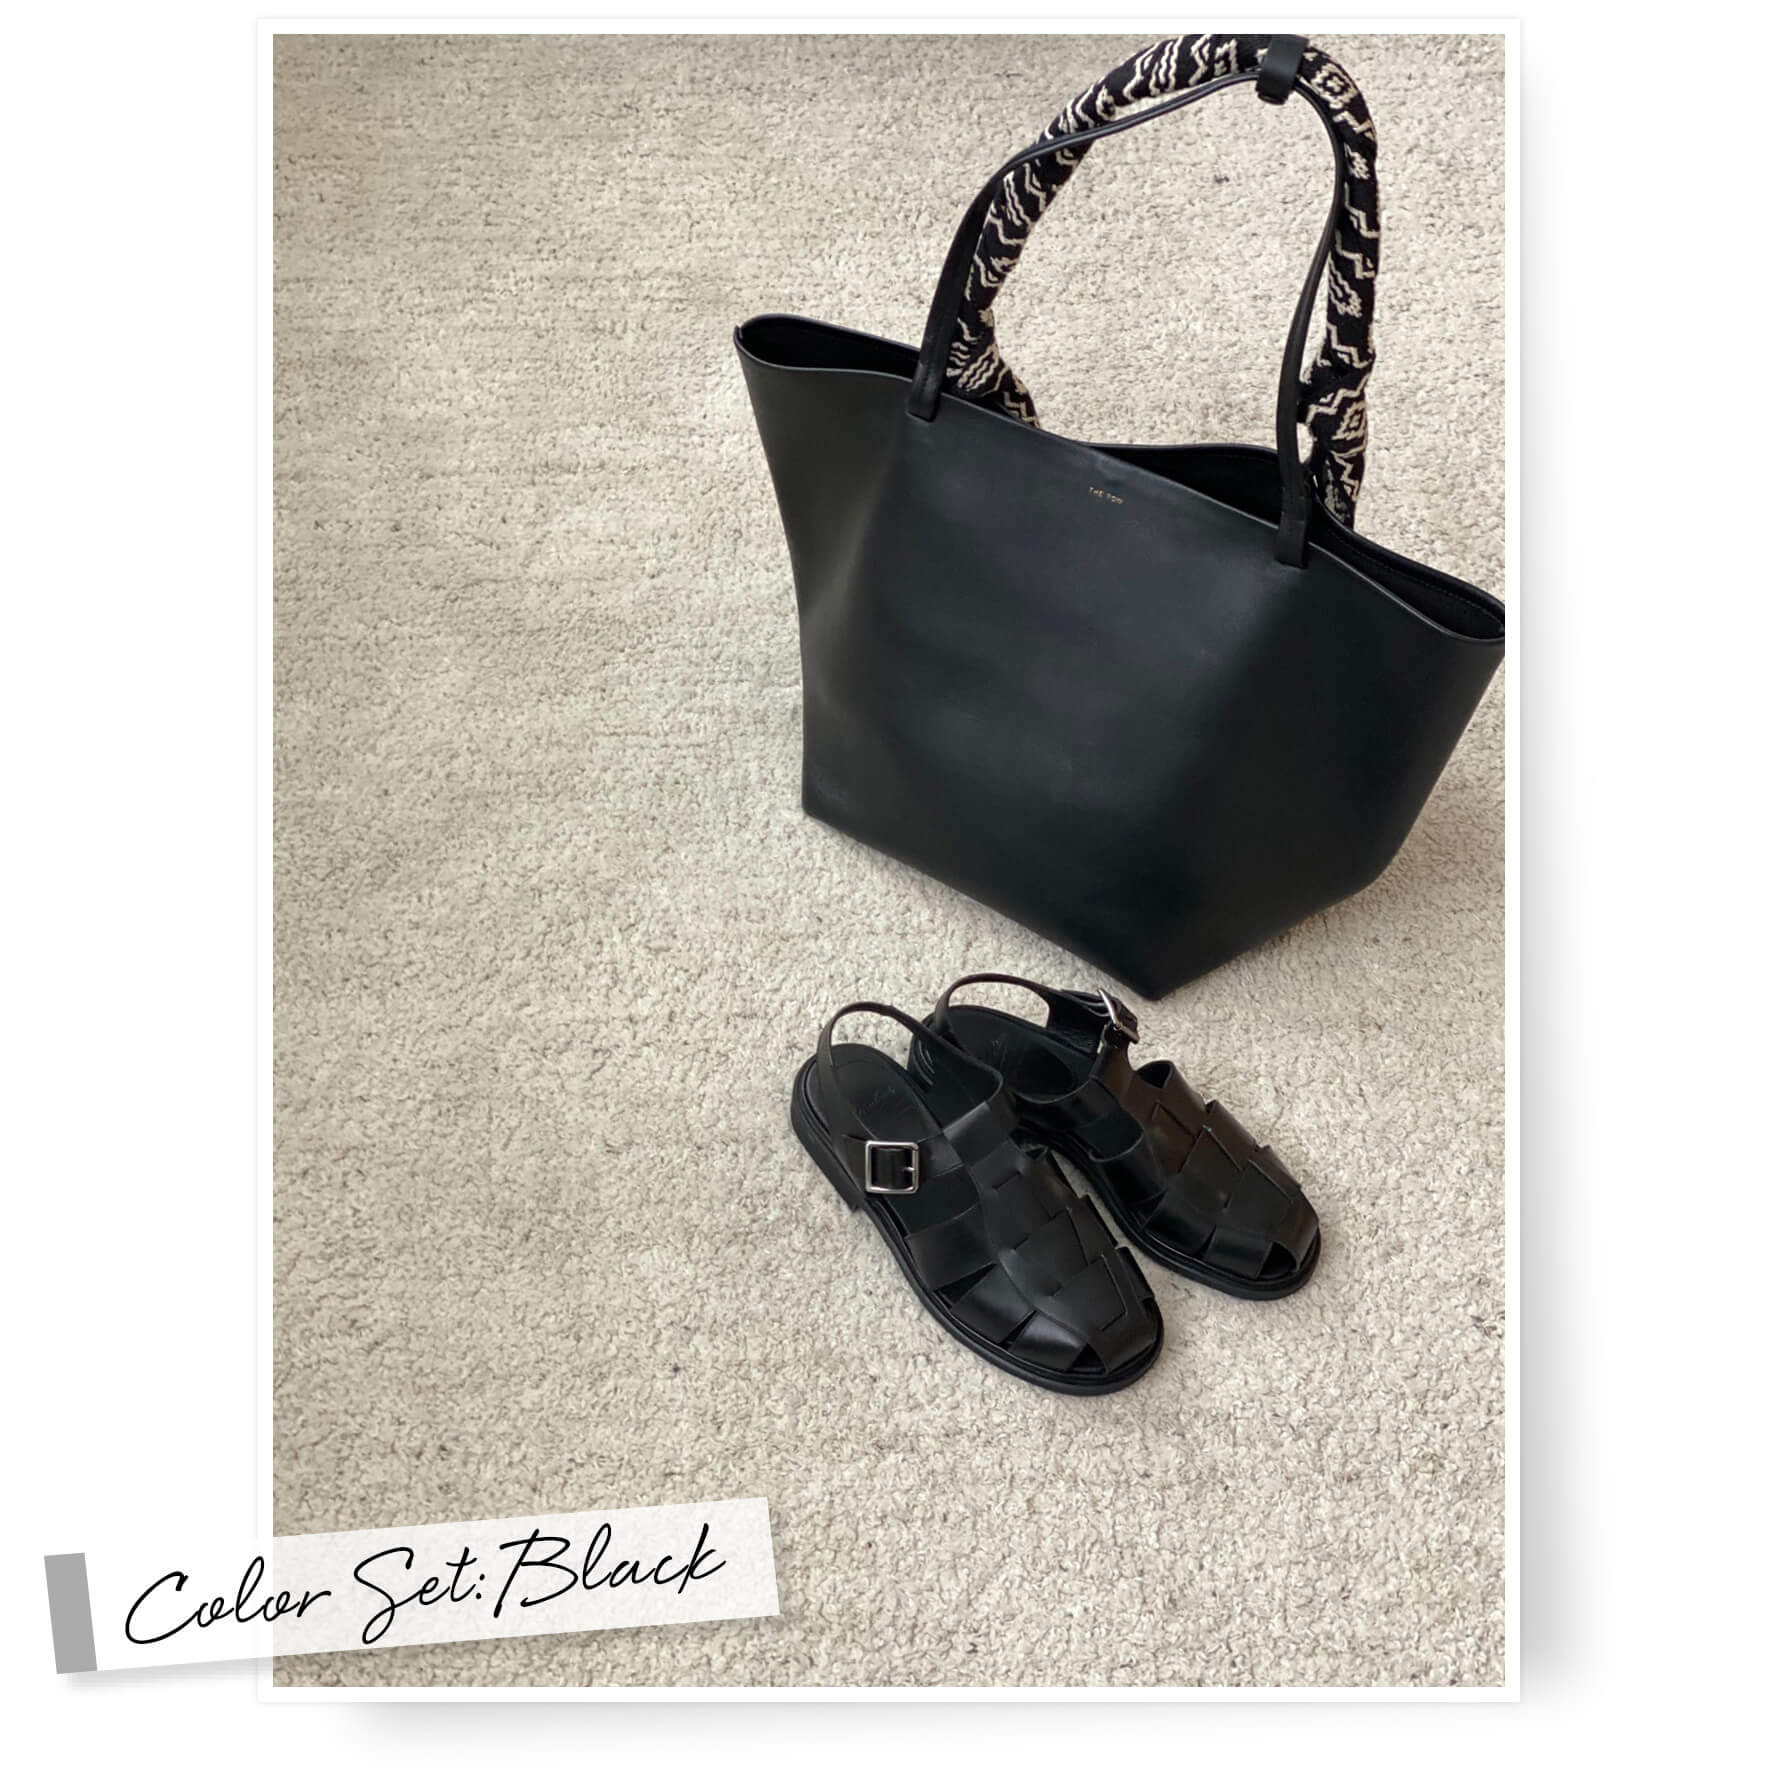 福田麻琴さんの靴とバッグセット「黒と黒」